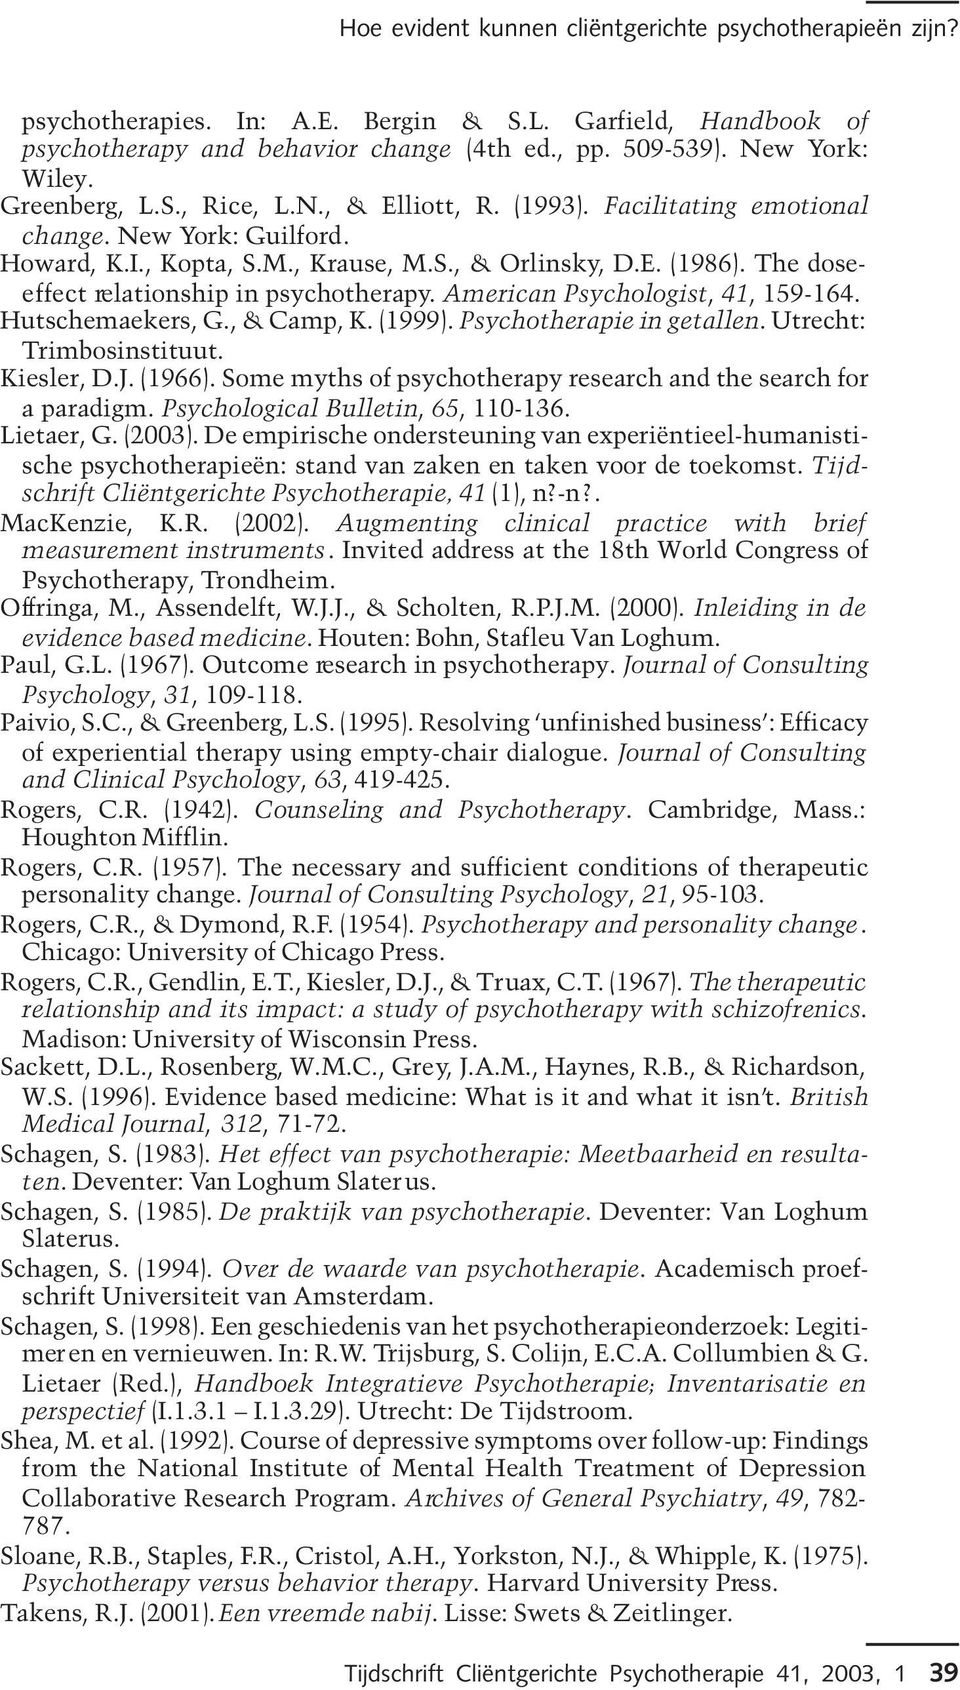 The doseeffect relationship in psychotherapy. American Psychologist, 41, 159-164. Hutschemaekers, G., & Camp, K. (1999). Psychotherapie in getallen. Utrecht: Trimbosinstituut. Kiesler, D.J. (1966).